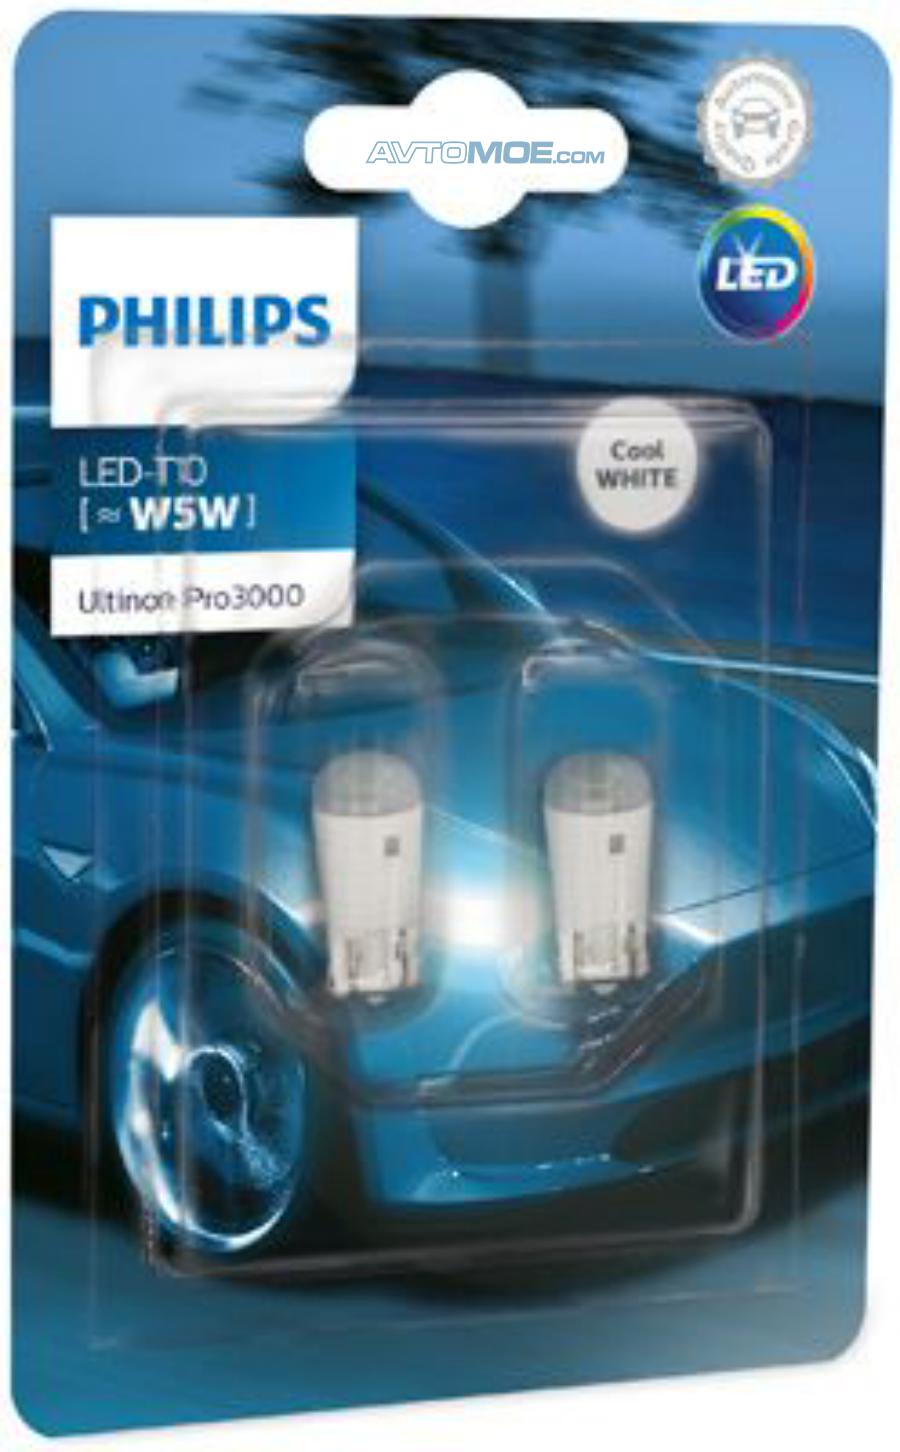 Лампа светодиодная Philips led w5w 12v-1w w2.1x9.5d 6000k 2шт. Philips 11961ulwx2 лампа светодиодная w5w" 12в 2шт. Лампа светодиодная Philips Ultinon pro3000 si 12v w5w 2 шт 11961u30cwb2. Лампа светодиодная w5w(t10) w2,1x9,5d белый 12v 1w Energy. Габариты филипс